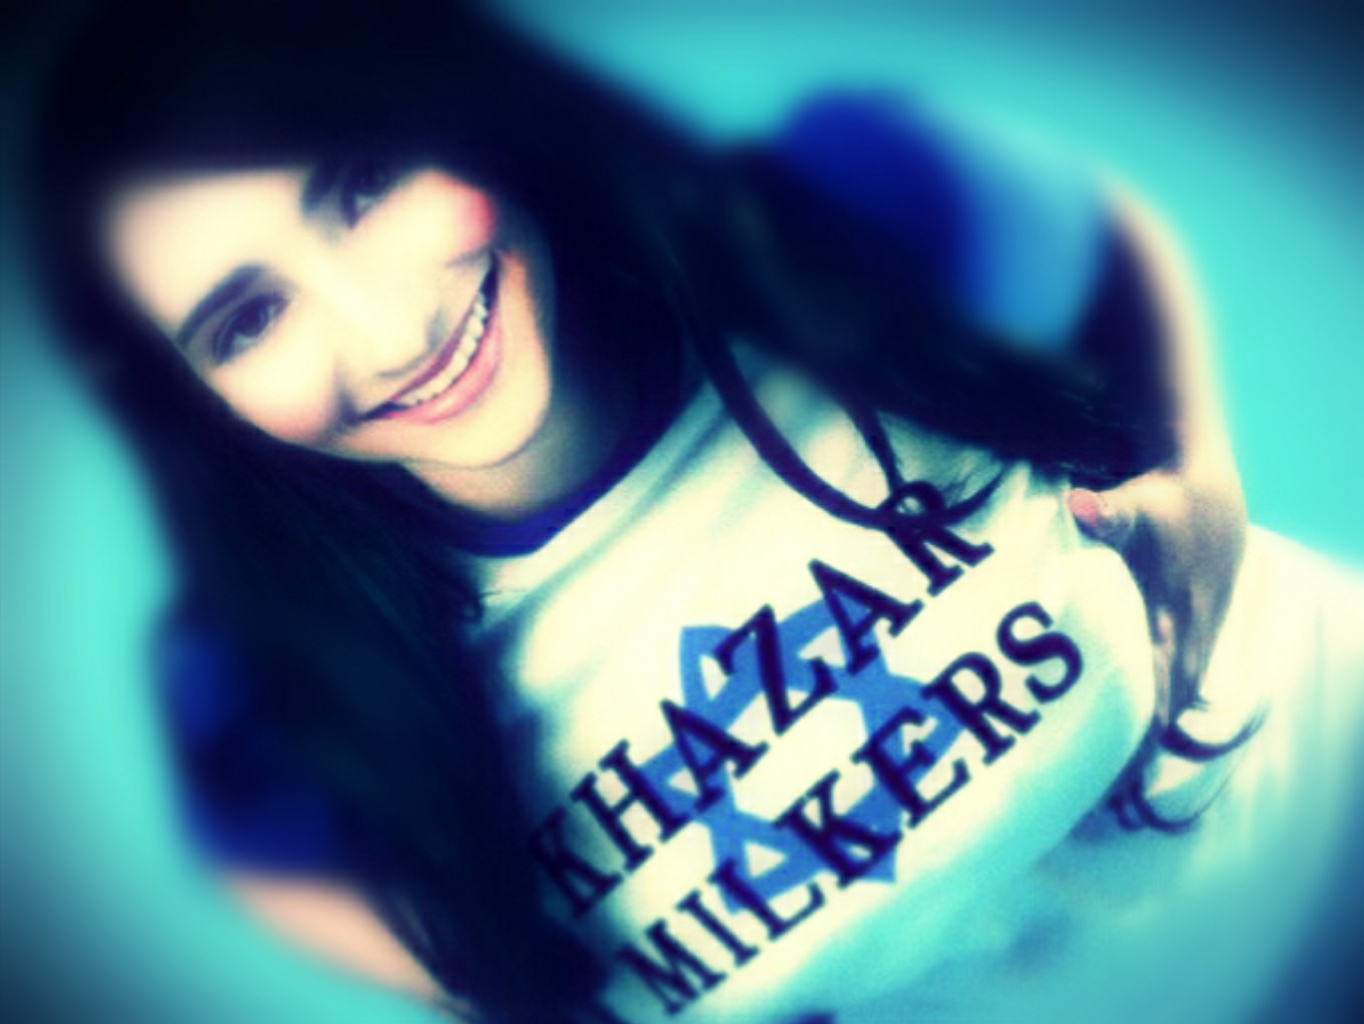 Milkers khazar Khazar milkers